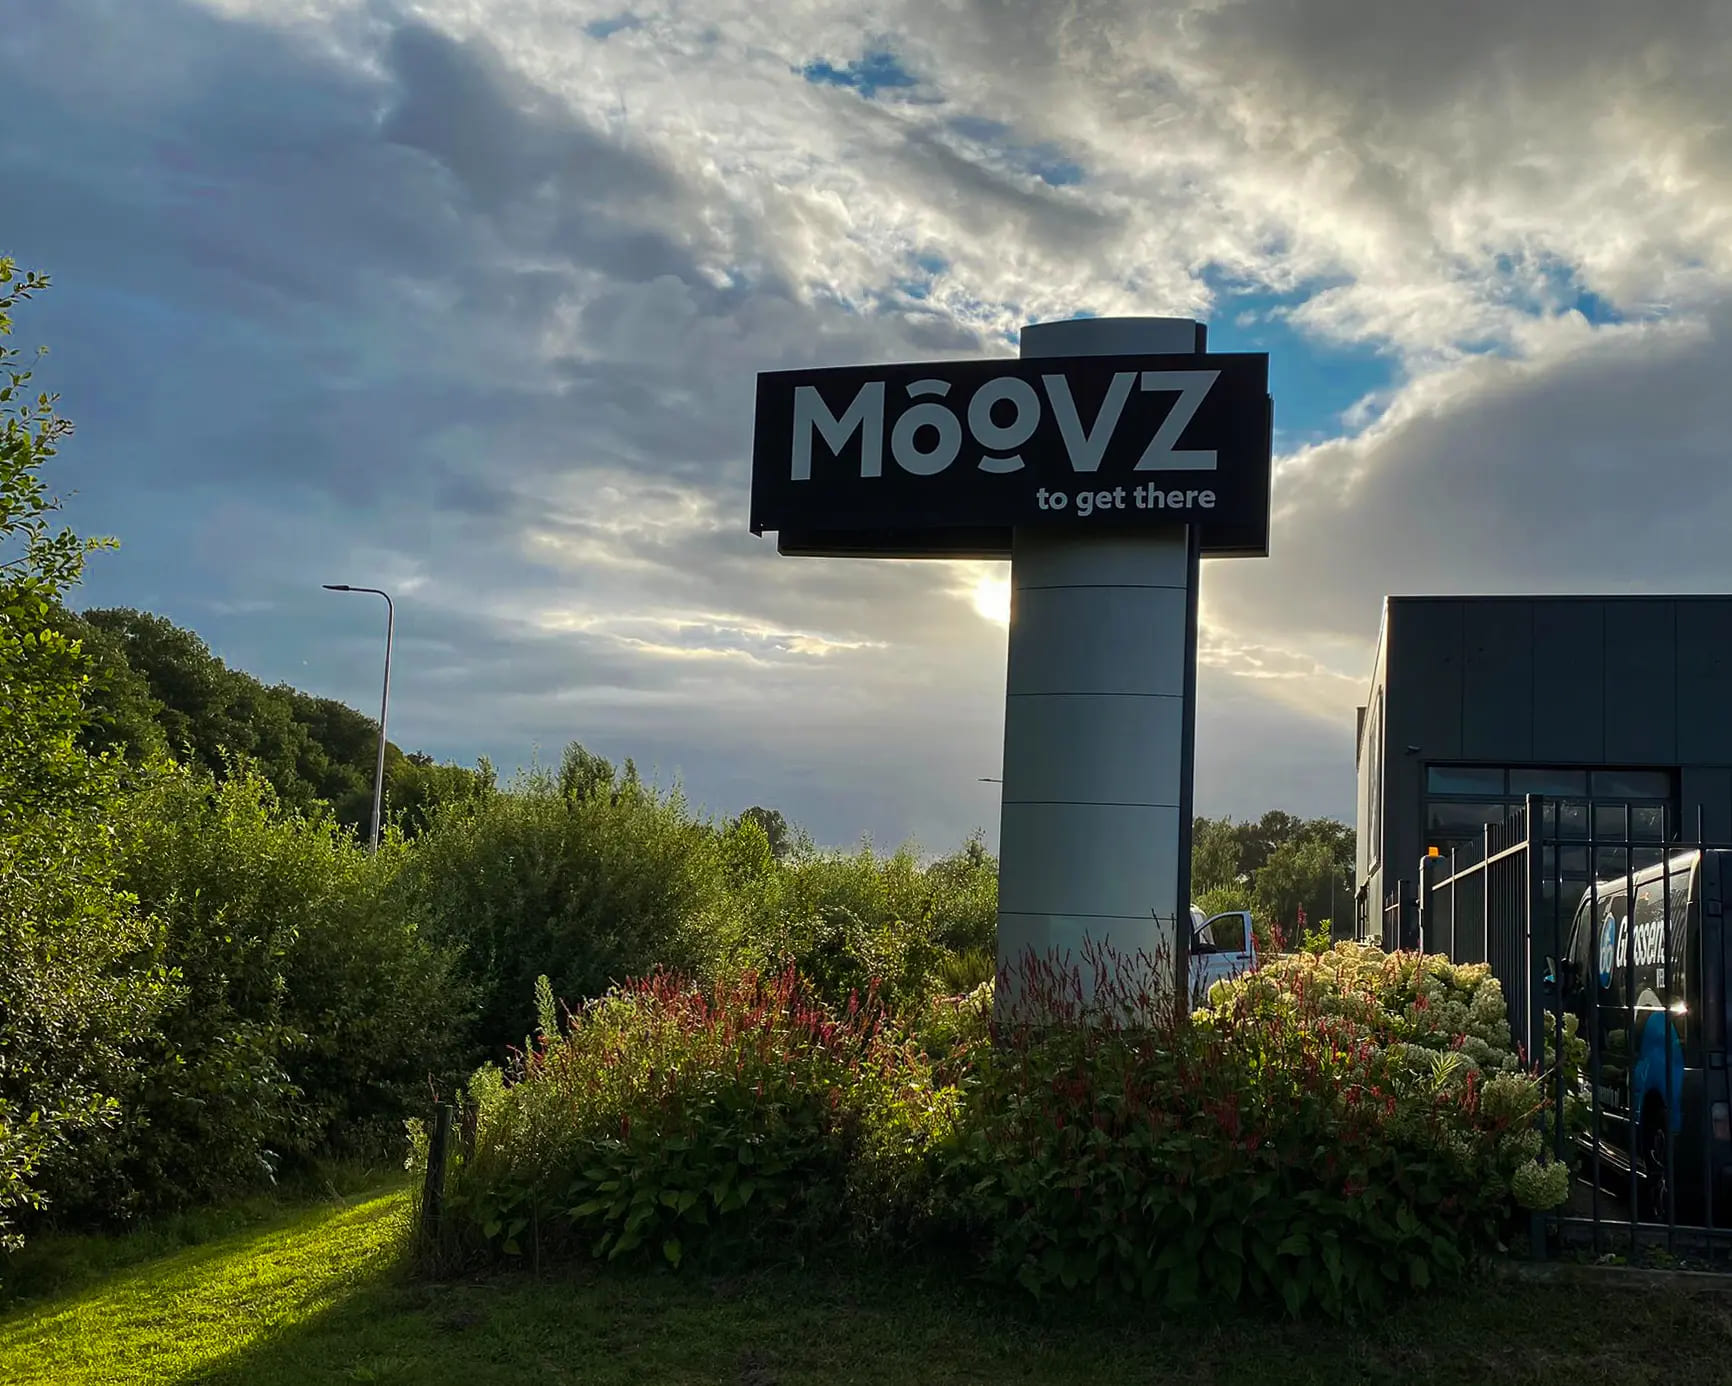 Lichtreclame voor Moovz door Mull2media